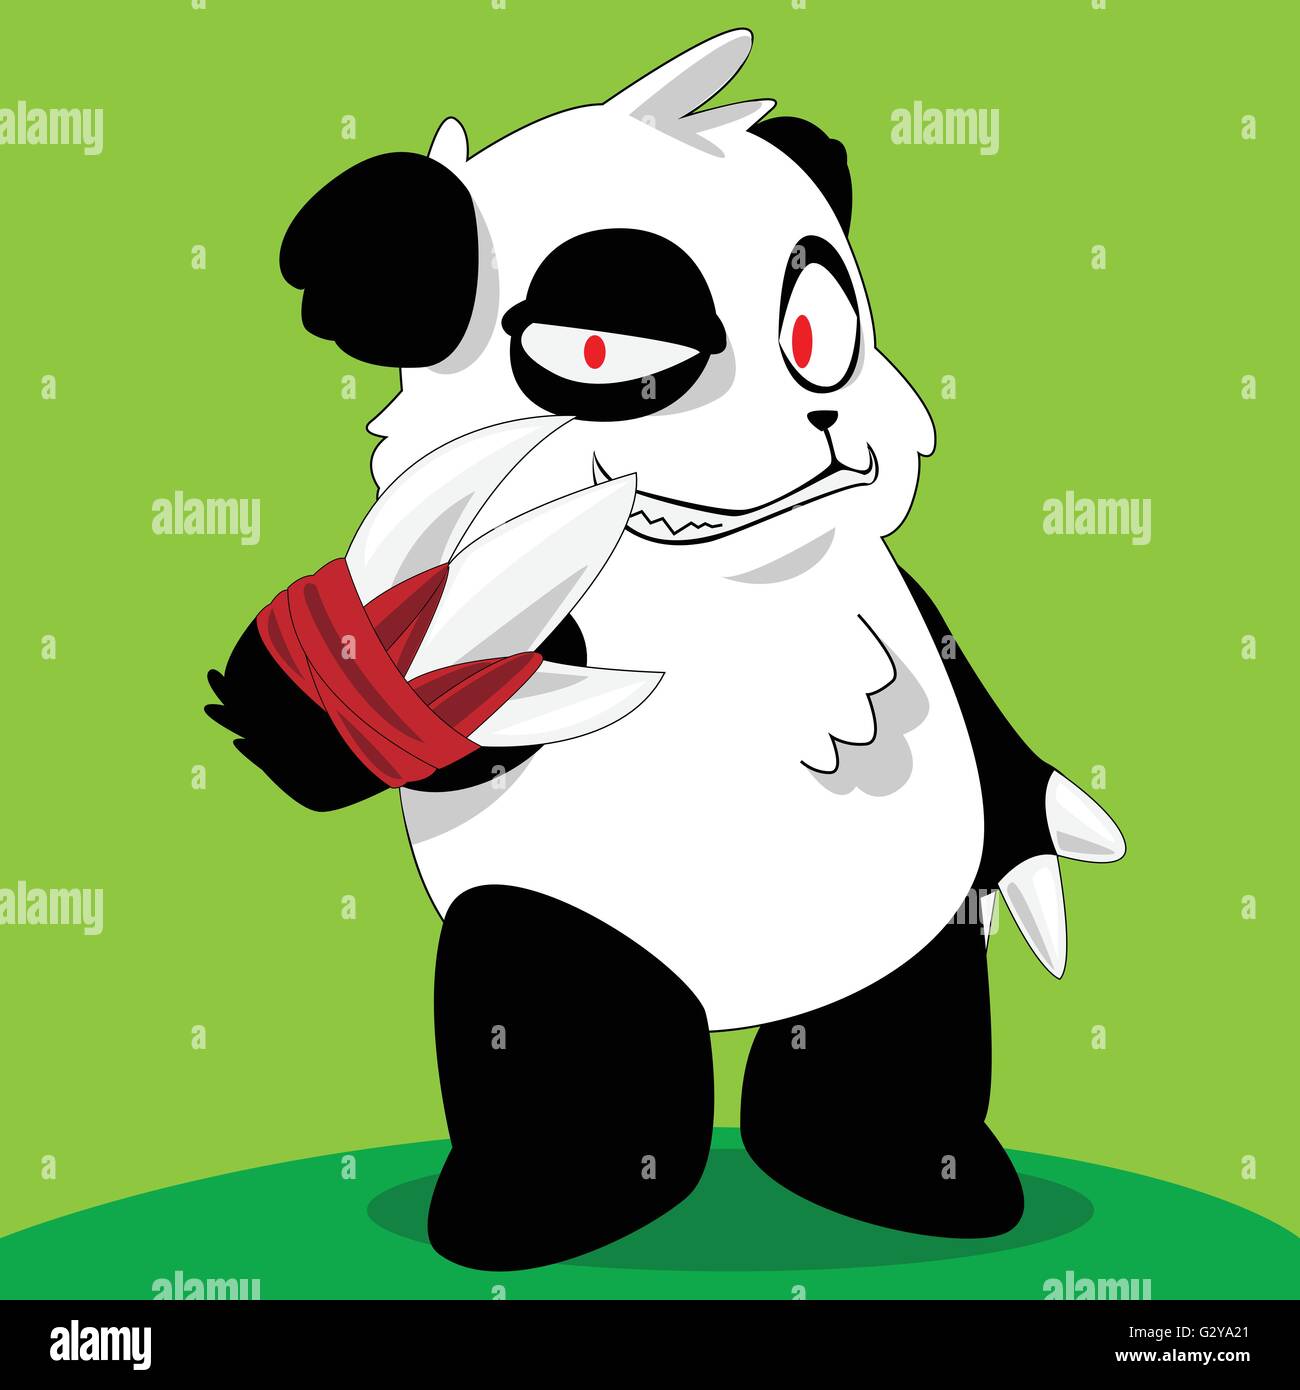 Panda cartoon Stock Vector